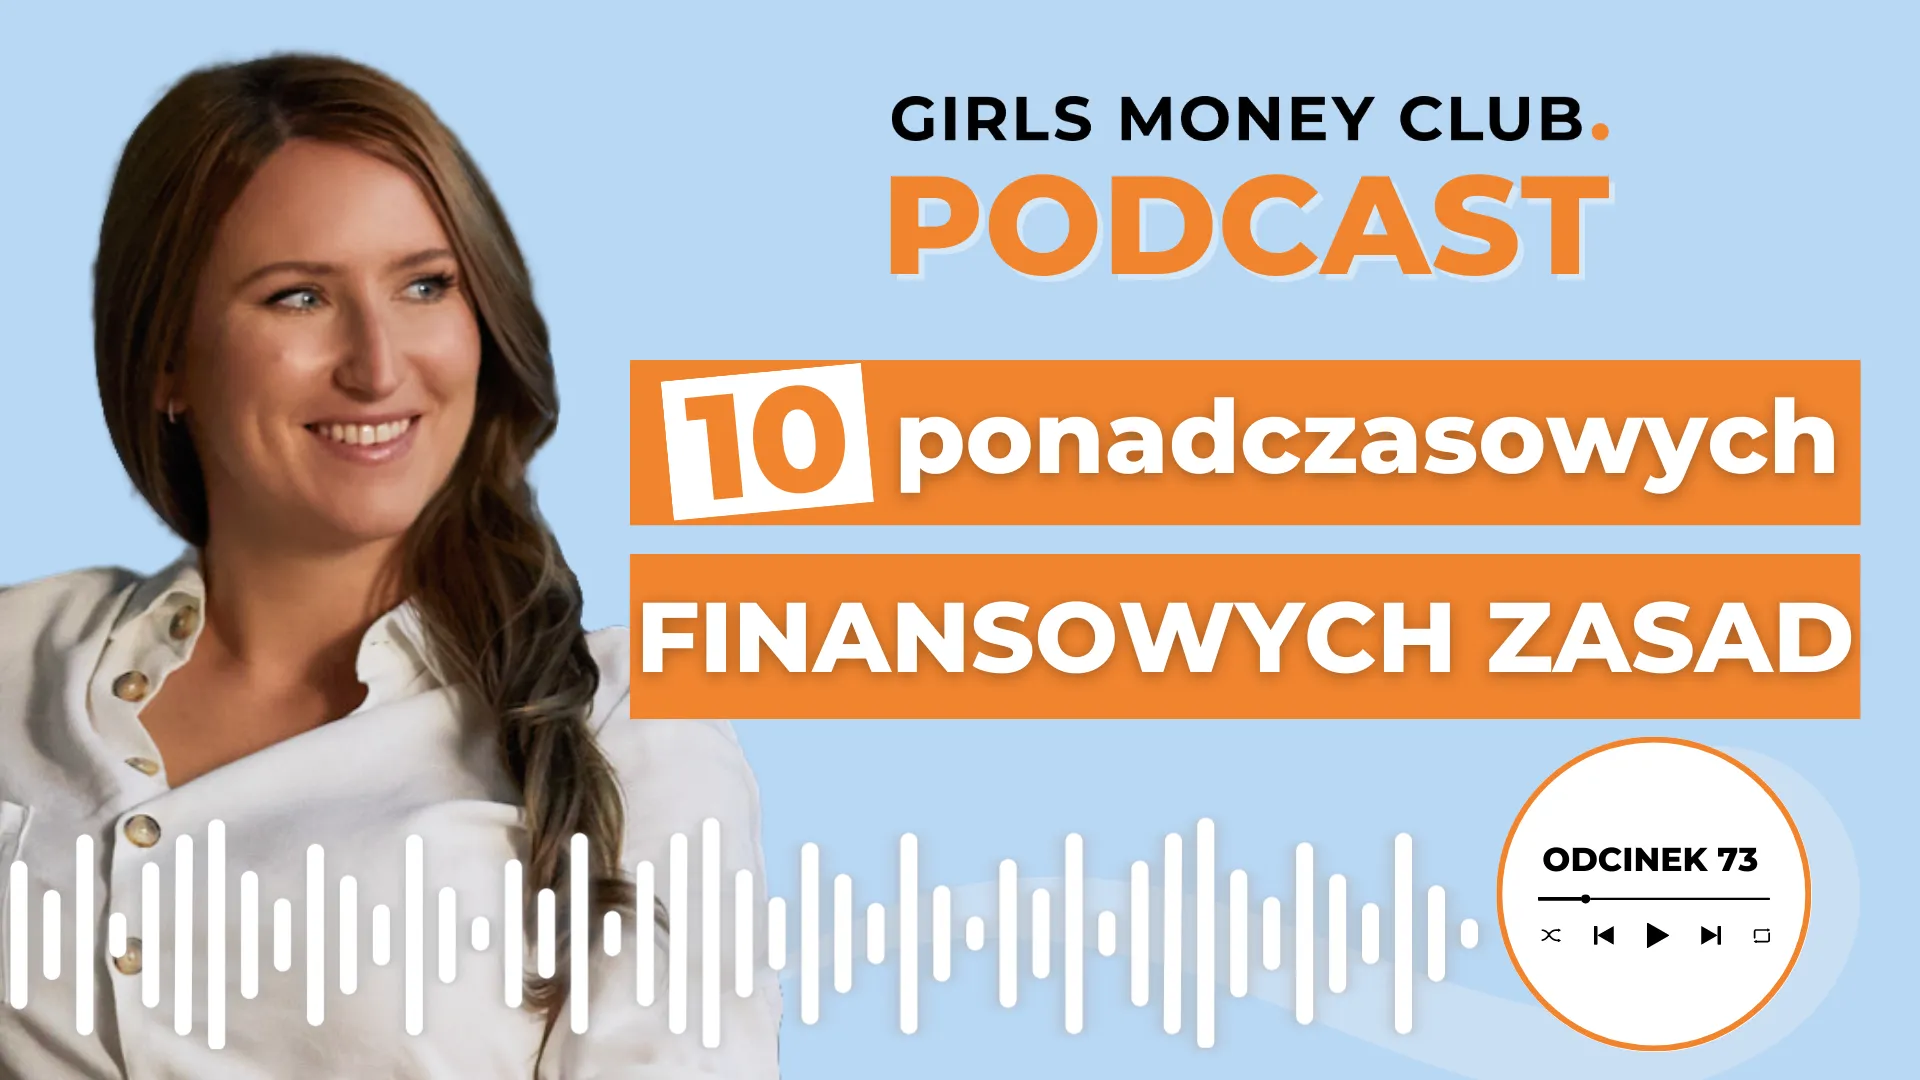 Zasady finansowe | Podcast | Girls Money Club